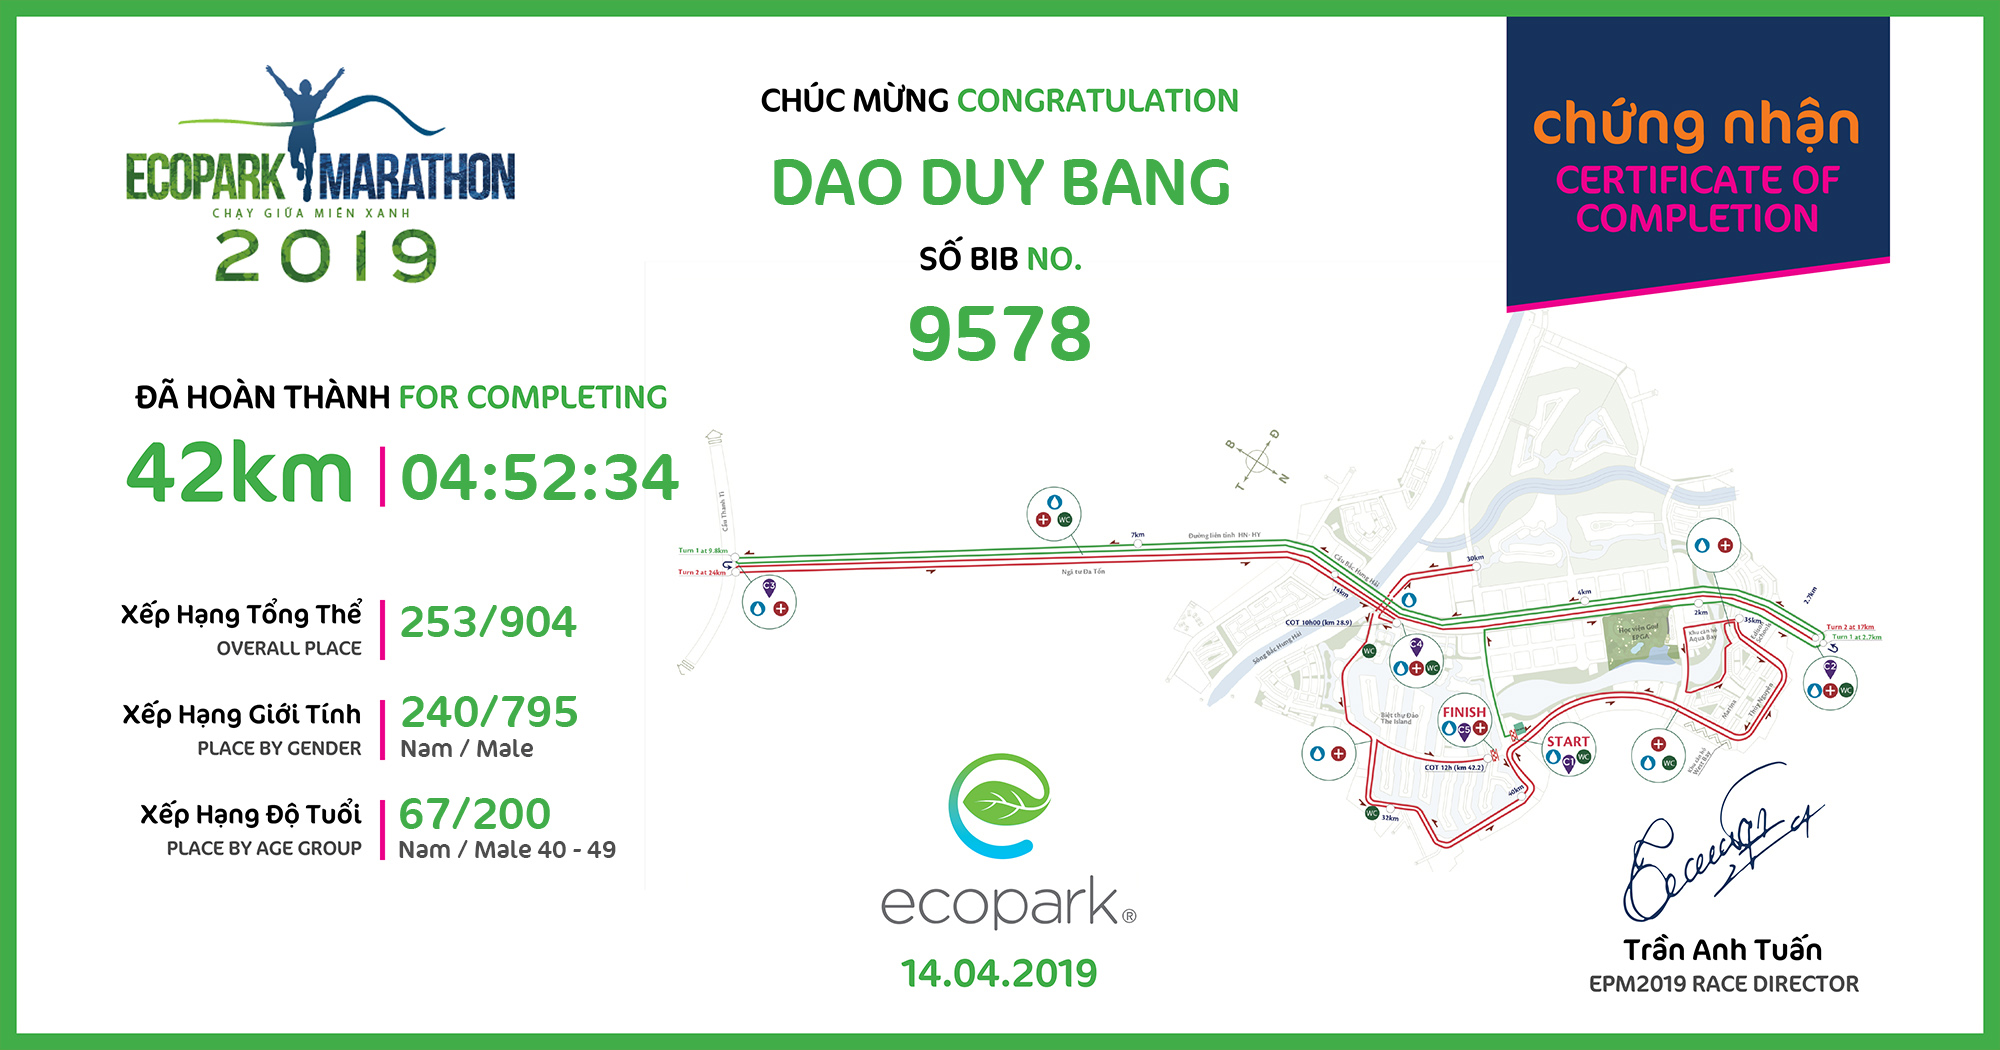 9578 - Dao Duy Bang